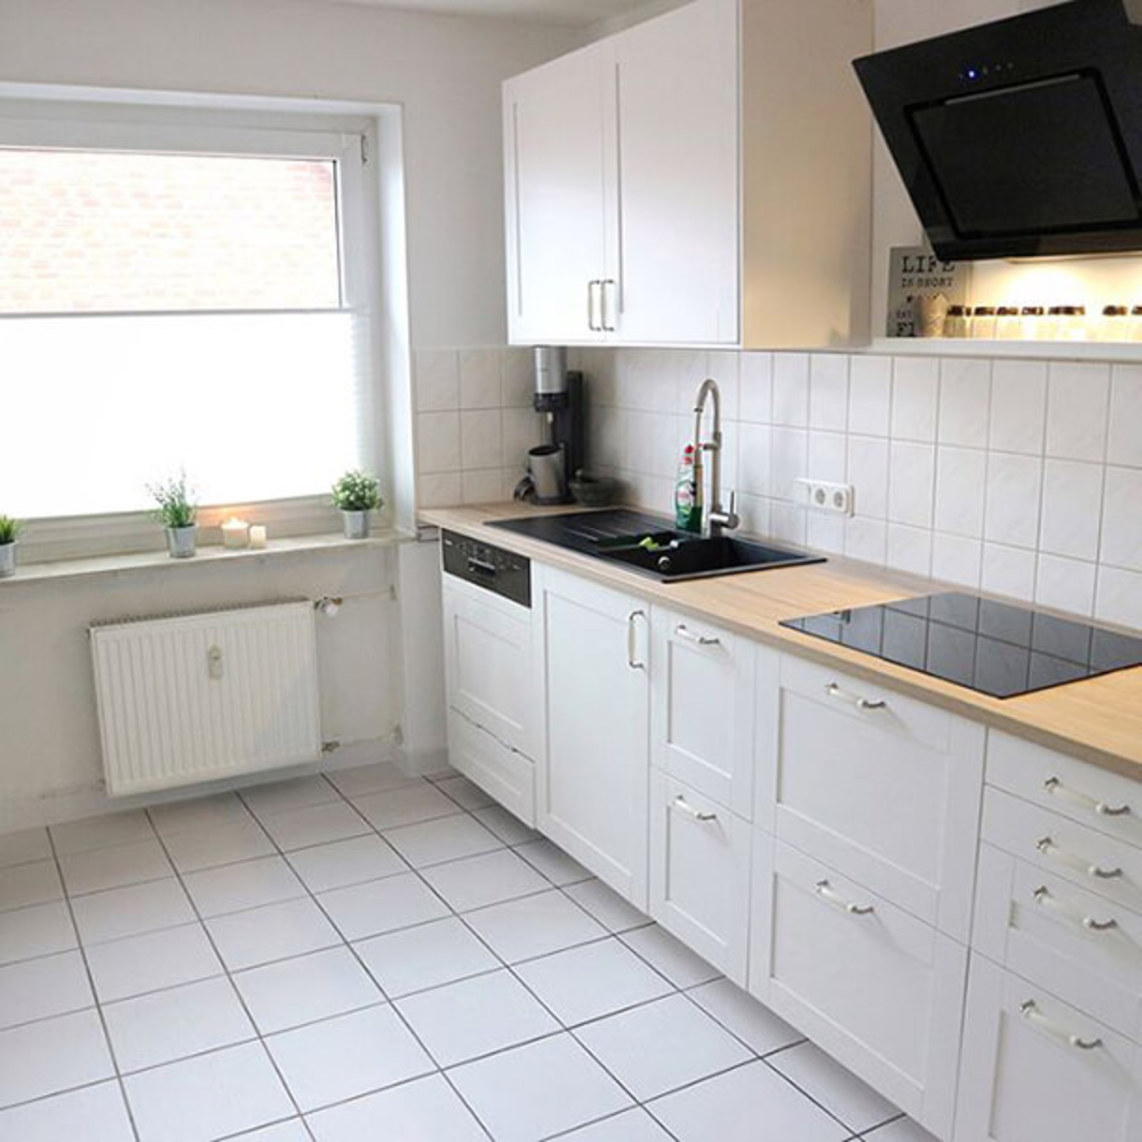 Diseño interior en toda la cocina para los azulejos, la encimera, los frentes y las superficies lisas en madera blanco - después